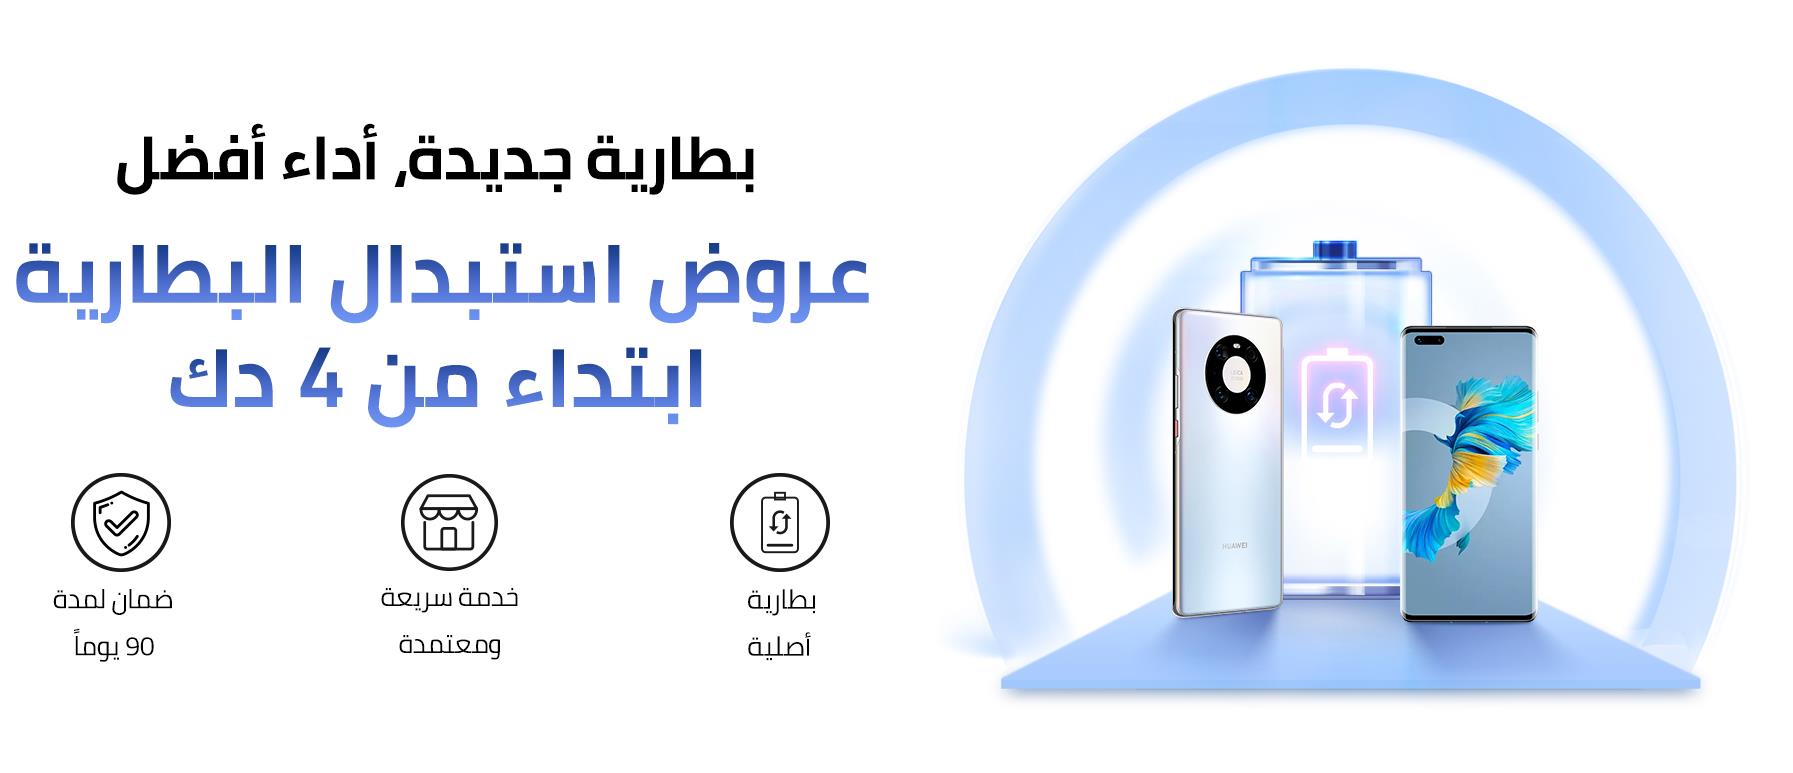  هواوي تعلن عن حملة استبدال البطارية لمستخدمي الهواتف الذكية والأجهزة اللوحية في الكويت 